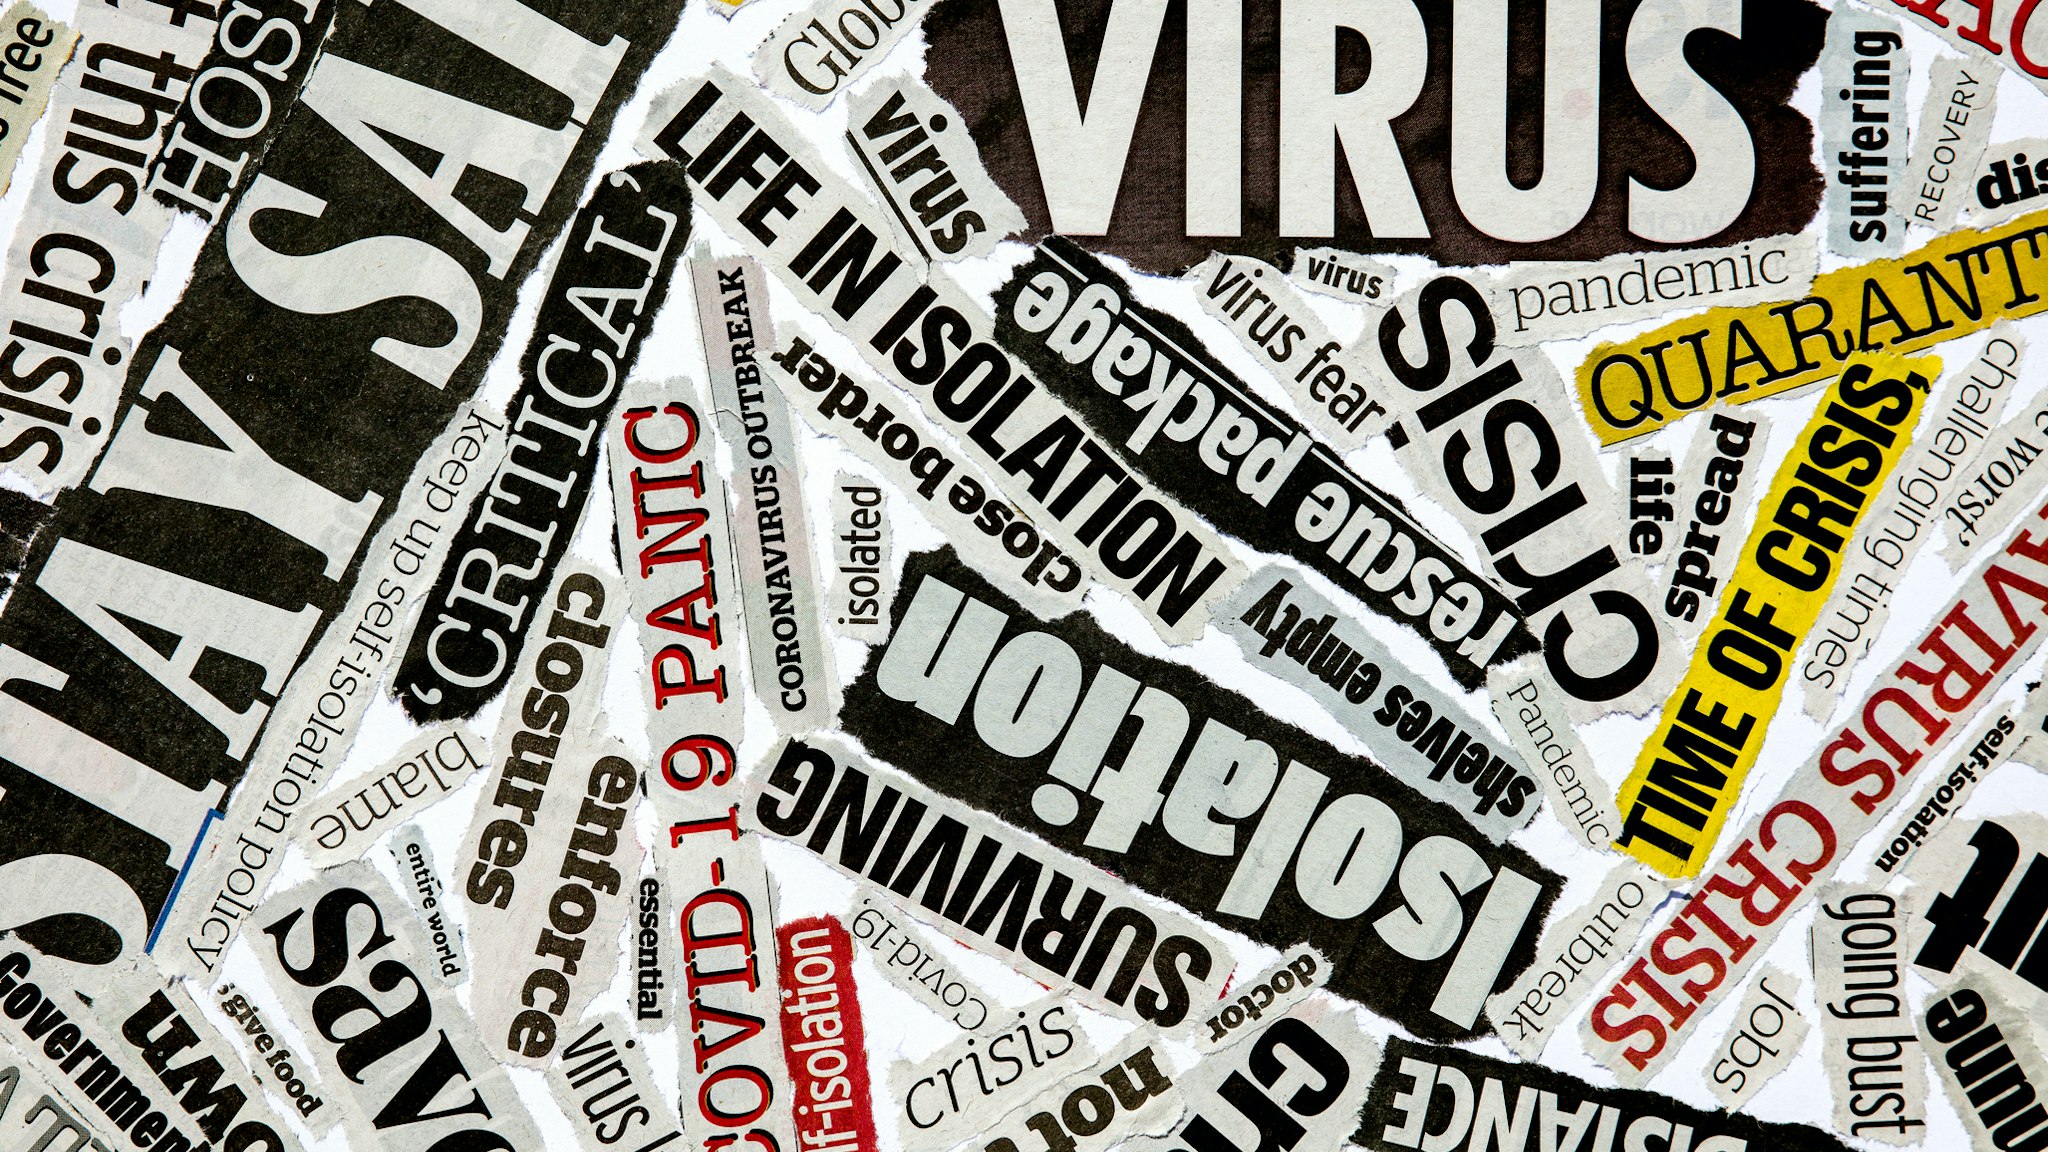 Newspaper clippings of Coronavirus pandemic